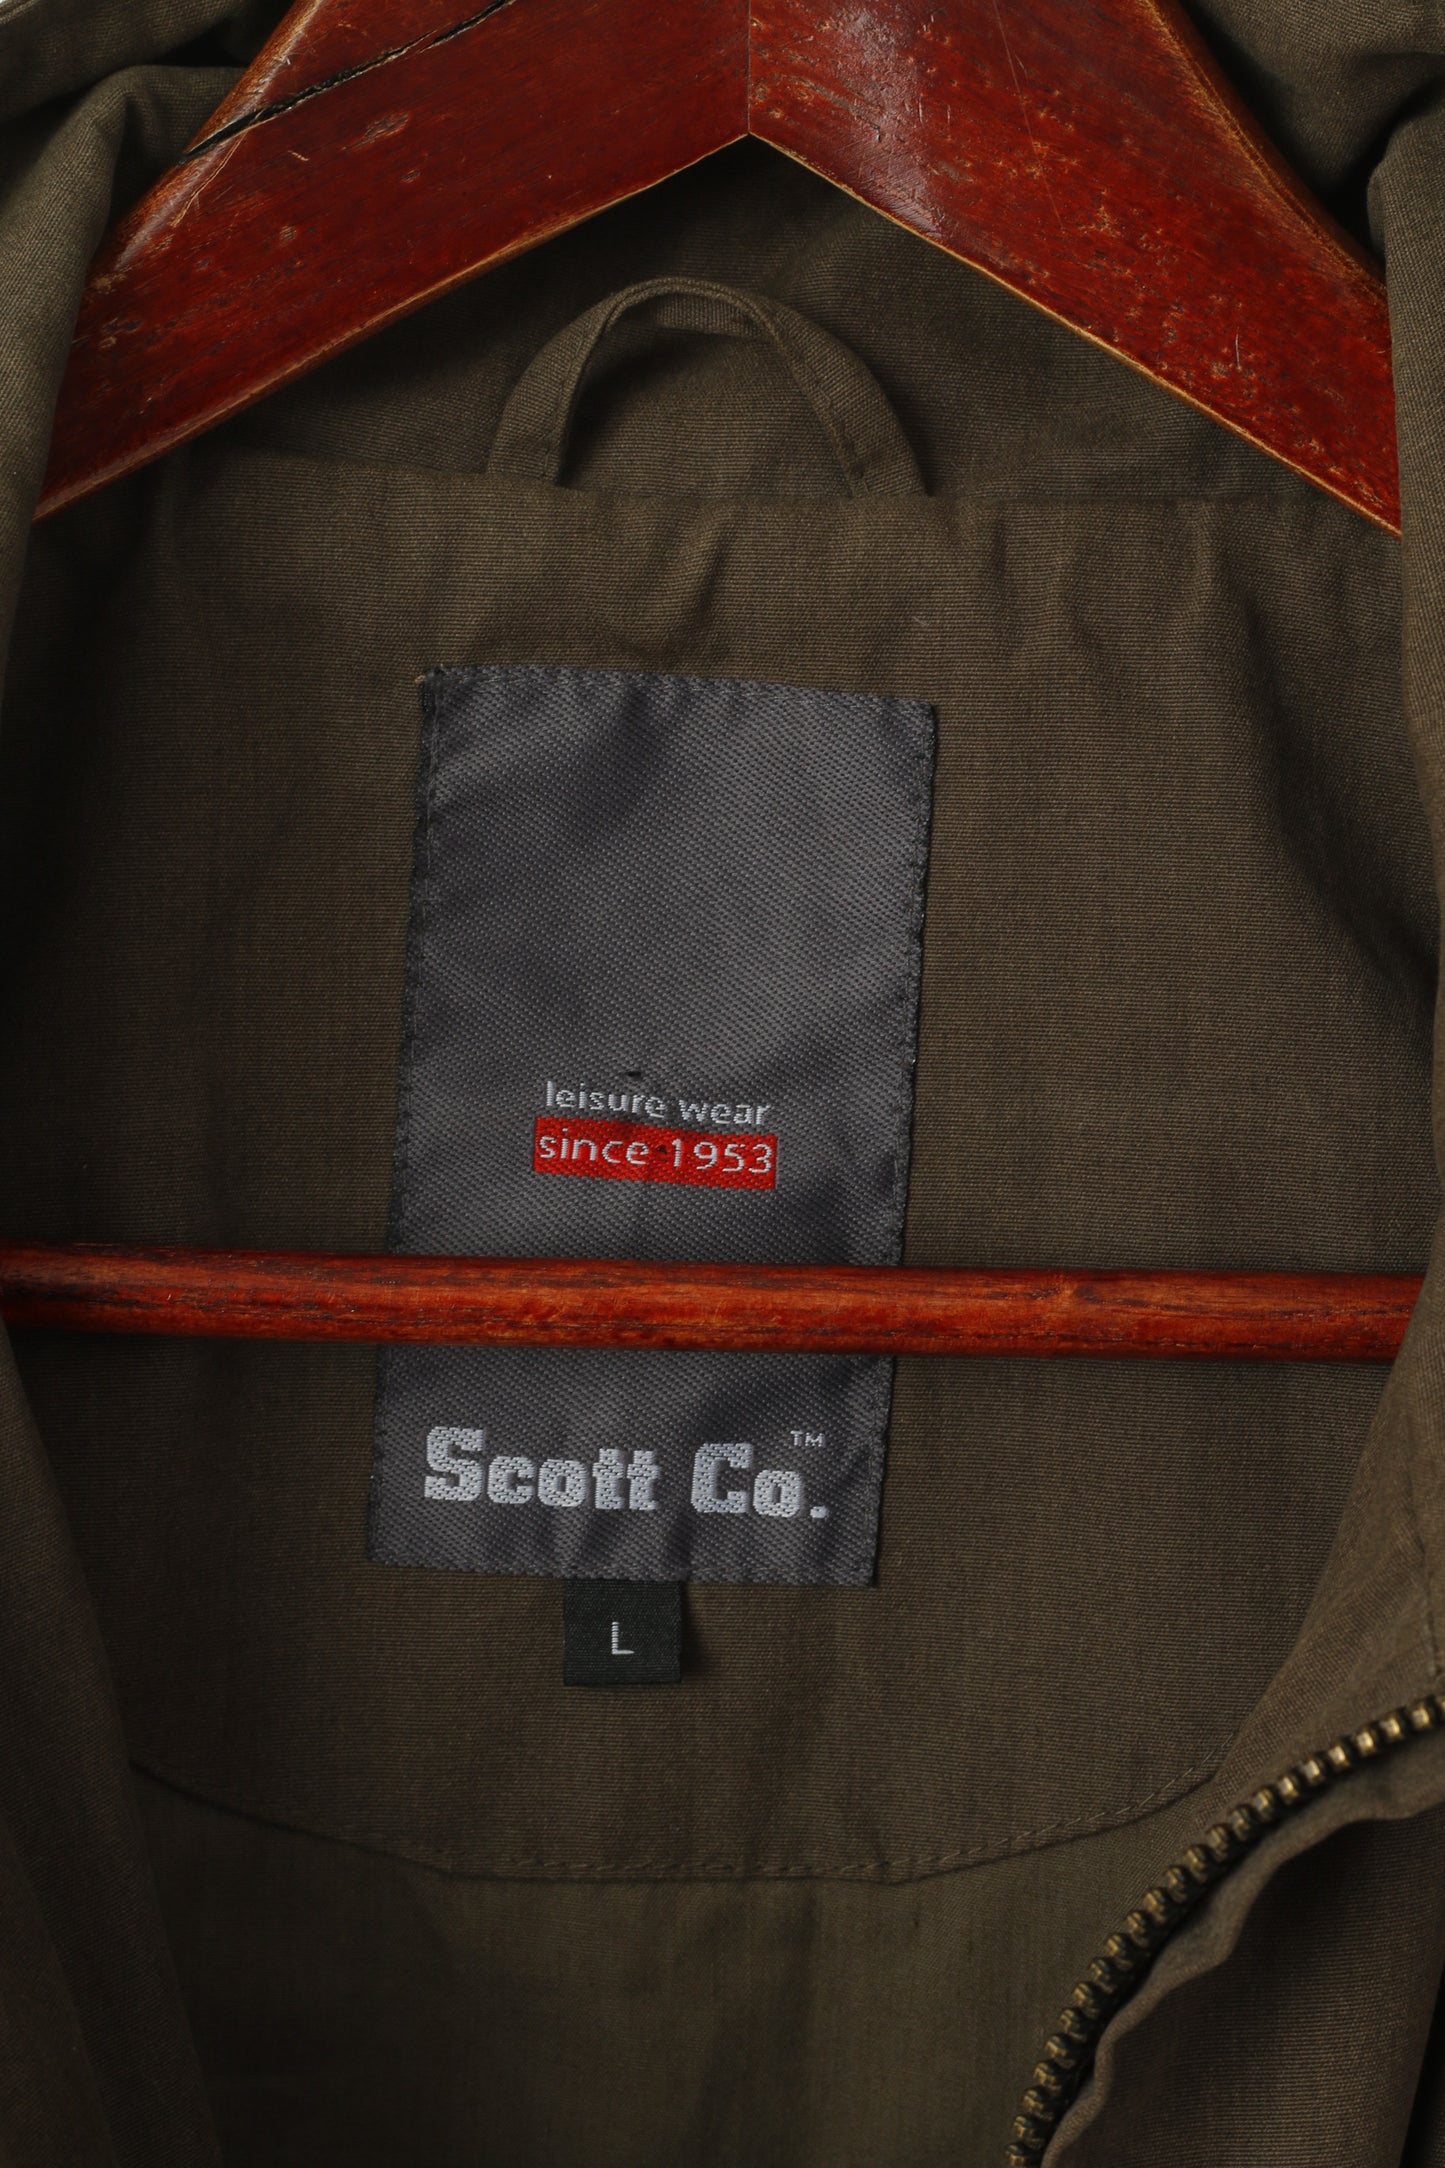 Scott Co. Hommes L Veste Vert Marron Fermeture Éclair Complète Militaire Léger Poches En Coton Haut